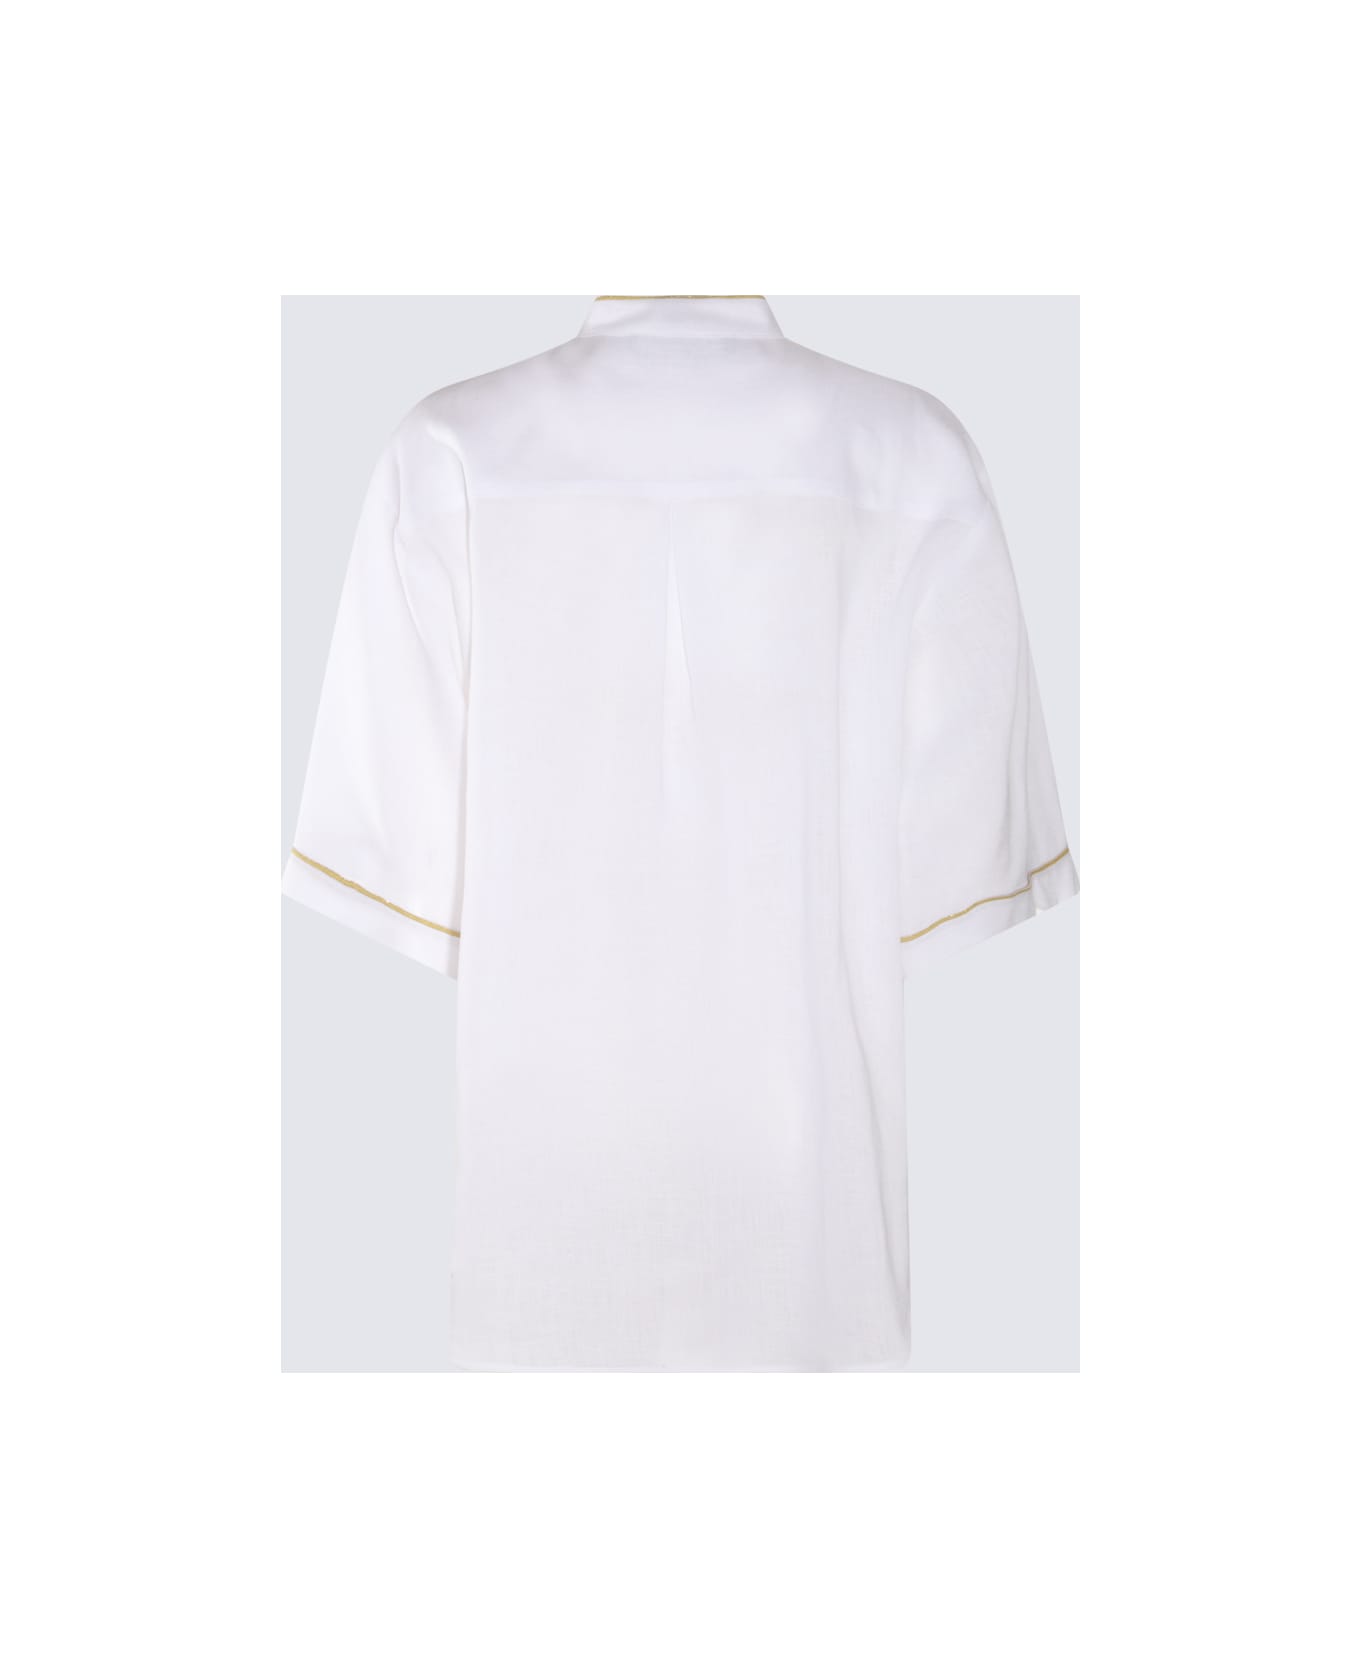 Fabiana Filippi White Cotton Shirt - White